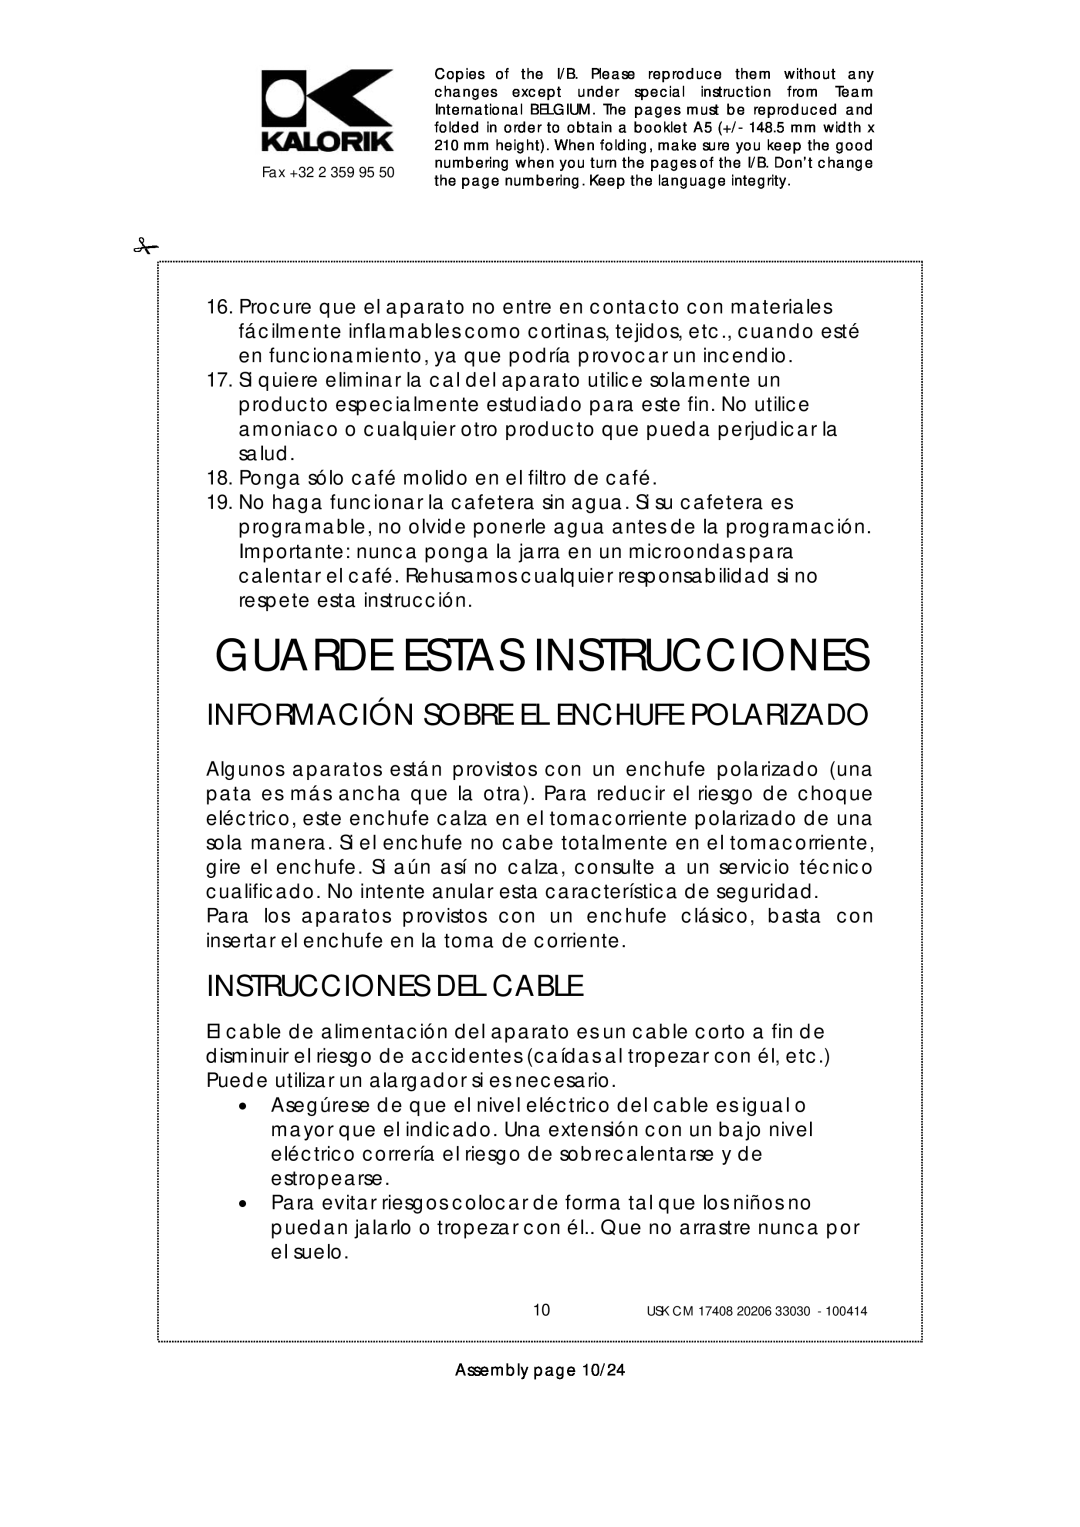 Kalorik USK CM 17408 manual Guarde Estas Instrucciones, Información Sobre El Enchufe Polarizado, Instrucciones Del Cable 